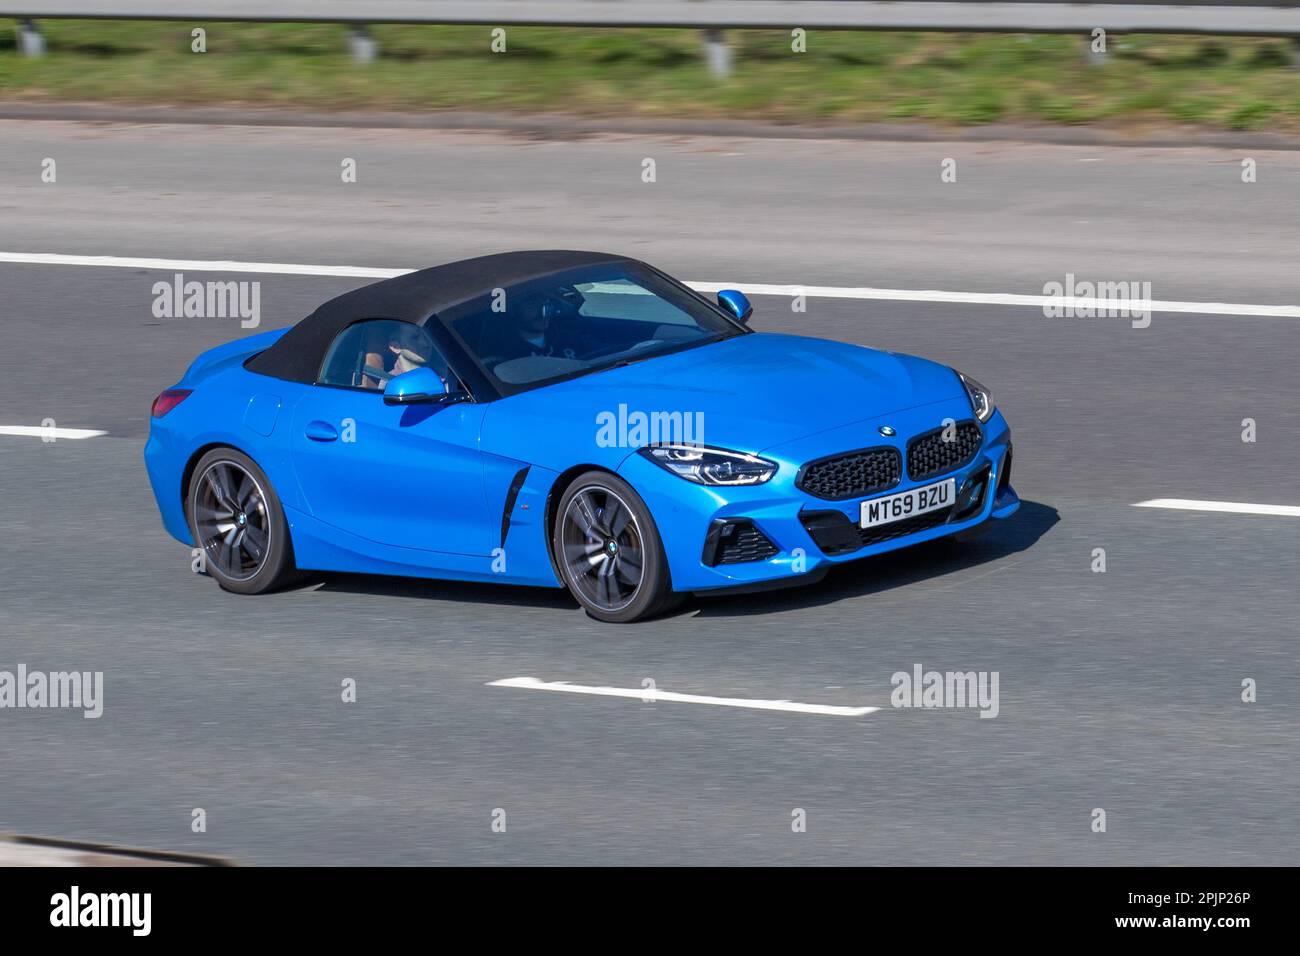 BMW Z4 SDRIVE301 M SPORT 2019 blu 1998 cc benzina automatica a 8 marce, con capote a 2 posti. Auto sportiva ; viaggiando sull'autostrada M61, Regno Unito Foto Stock